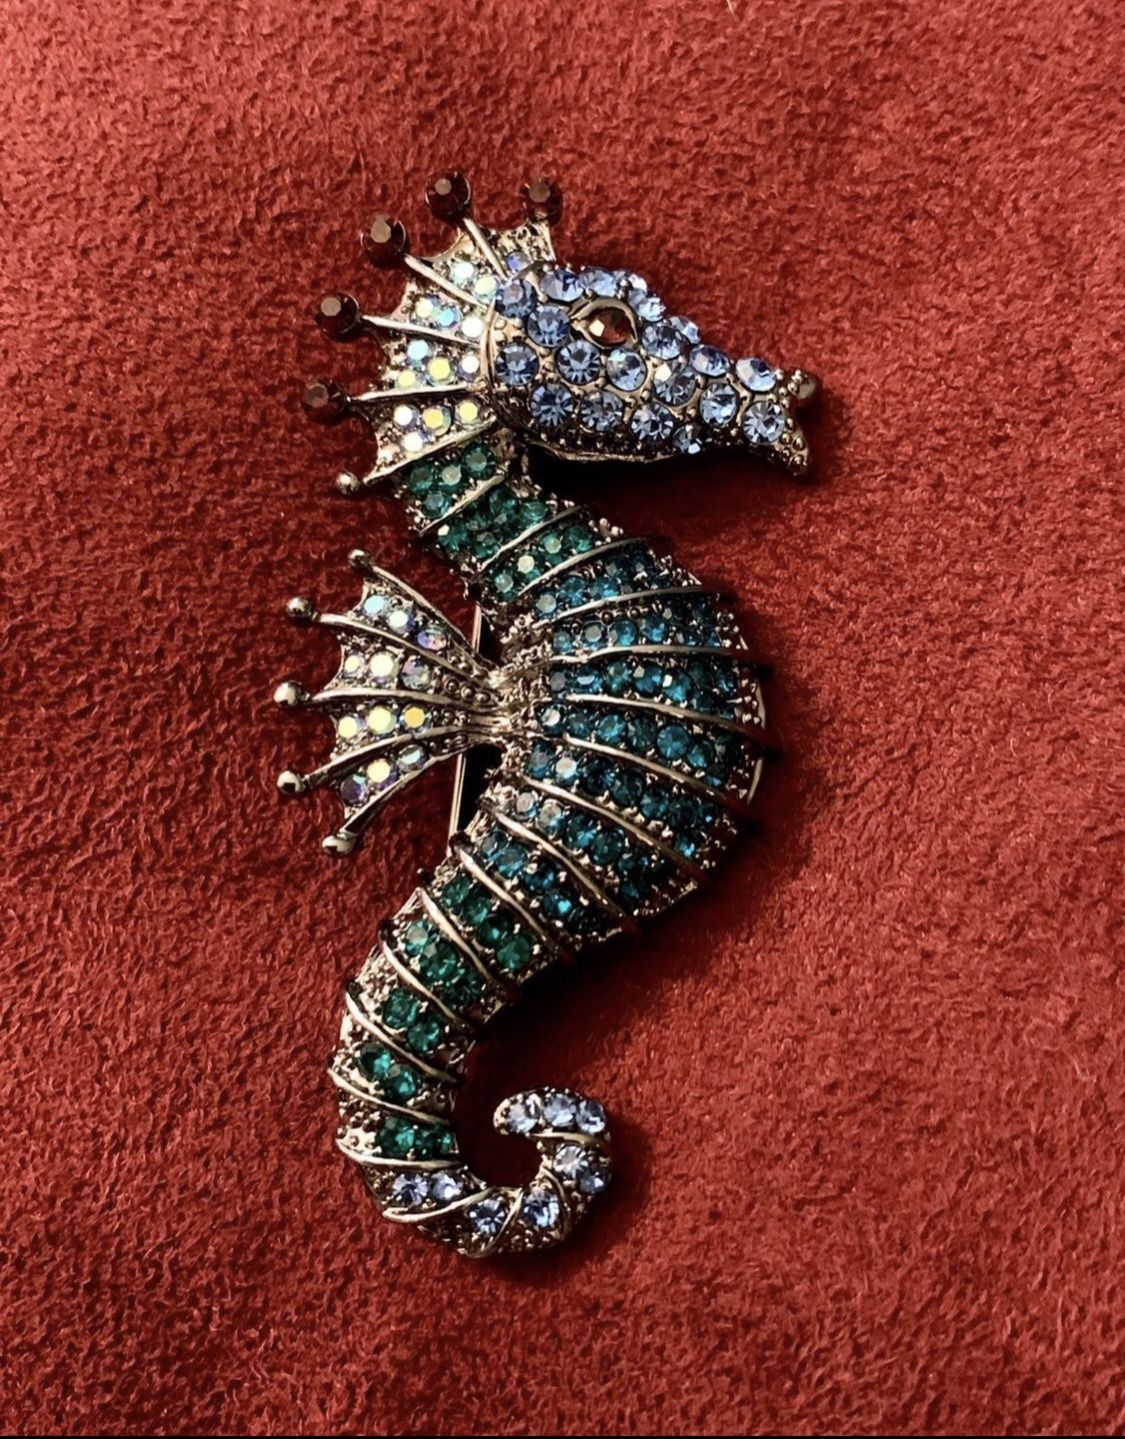 Blue rhinestone seahorse brooch  Approx 2.5”x1.25”